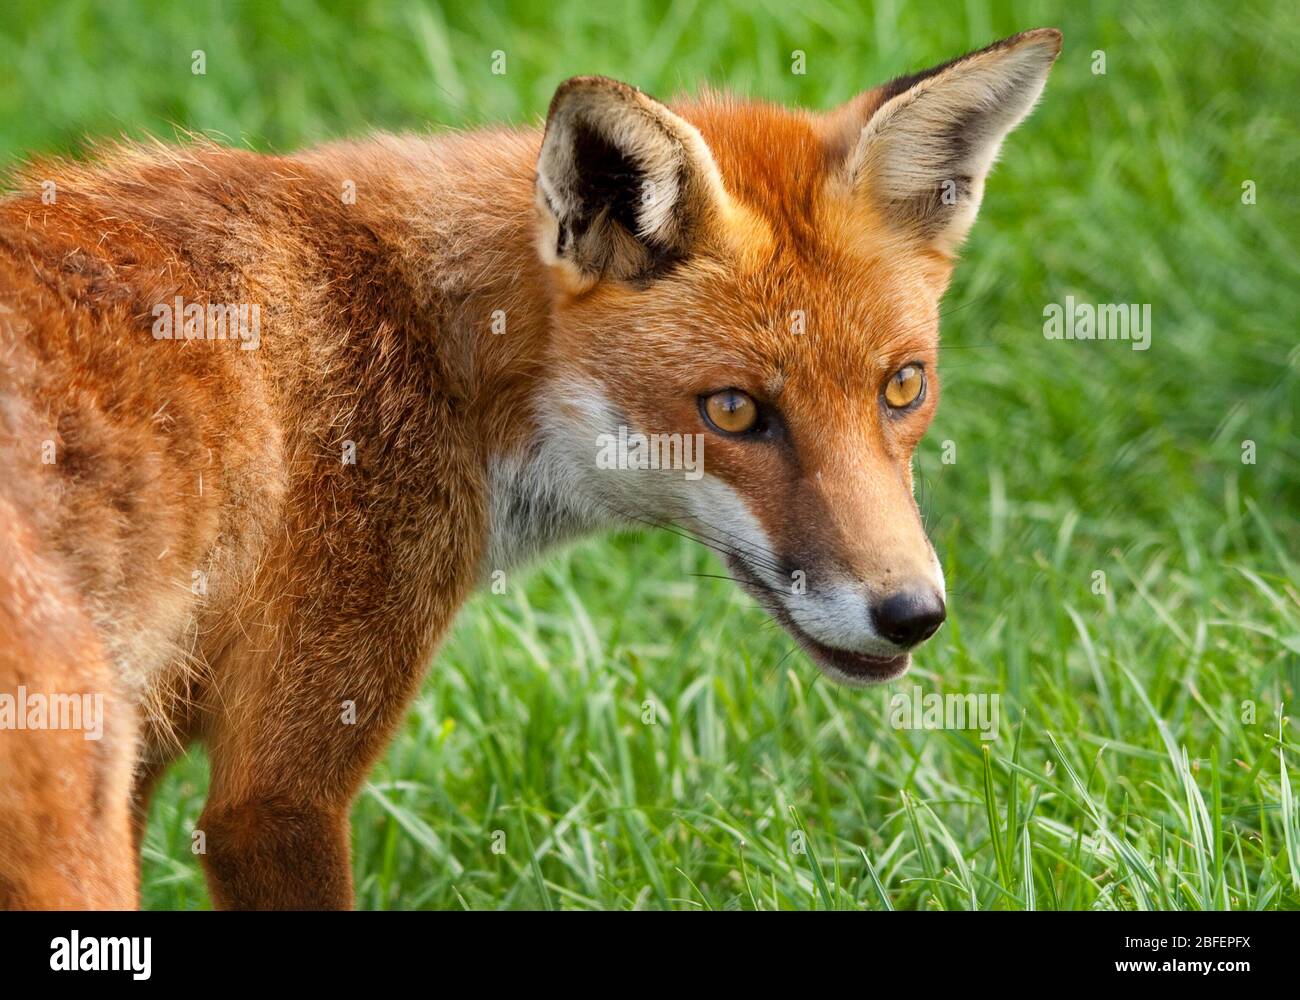 Fox Vulpes vulpes rouge fourrure brun blanc dessous gorge menton et oreilles intérieures noir sur les oreilles et les jambes vers l'avant yeux chien comme museau pointu Banque D'Images